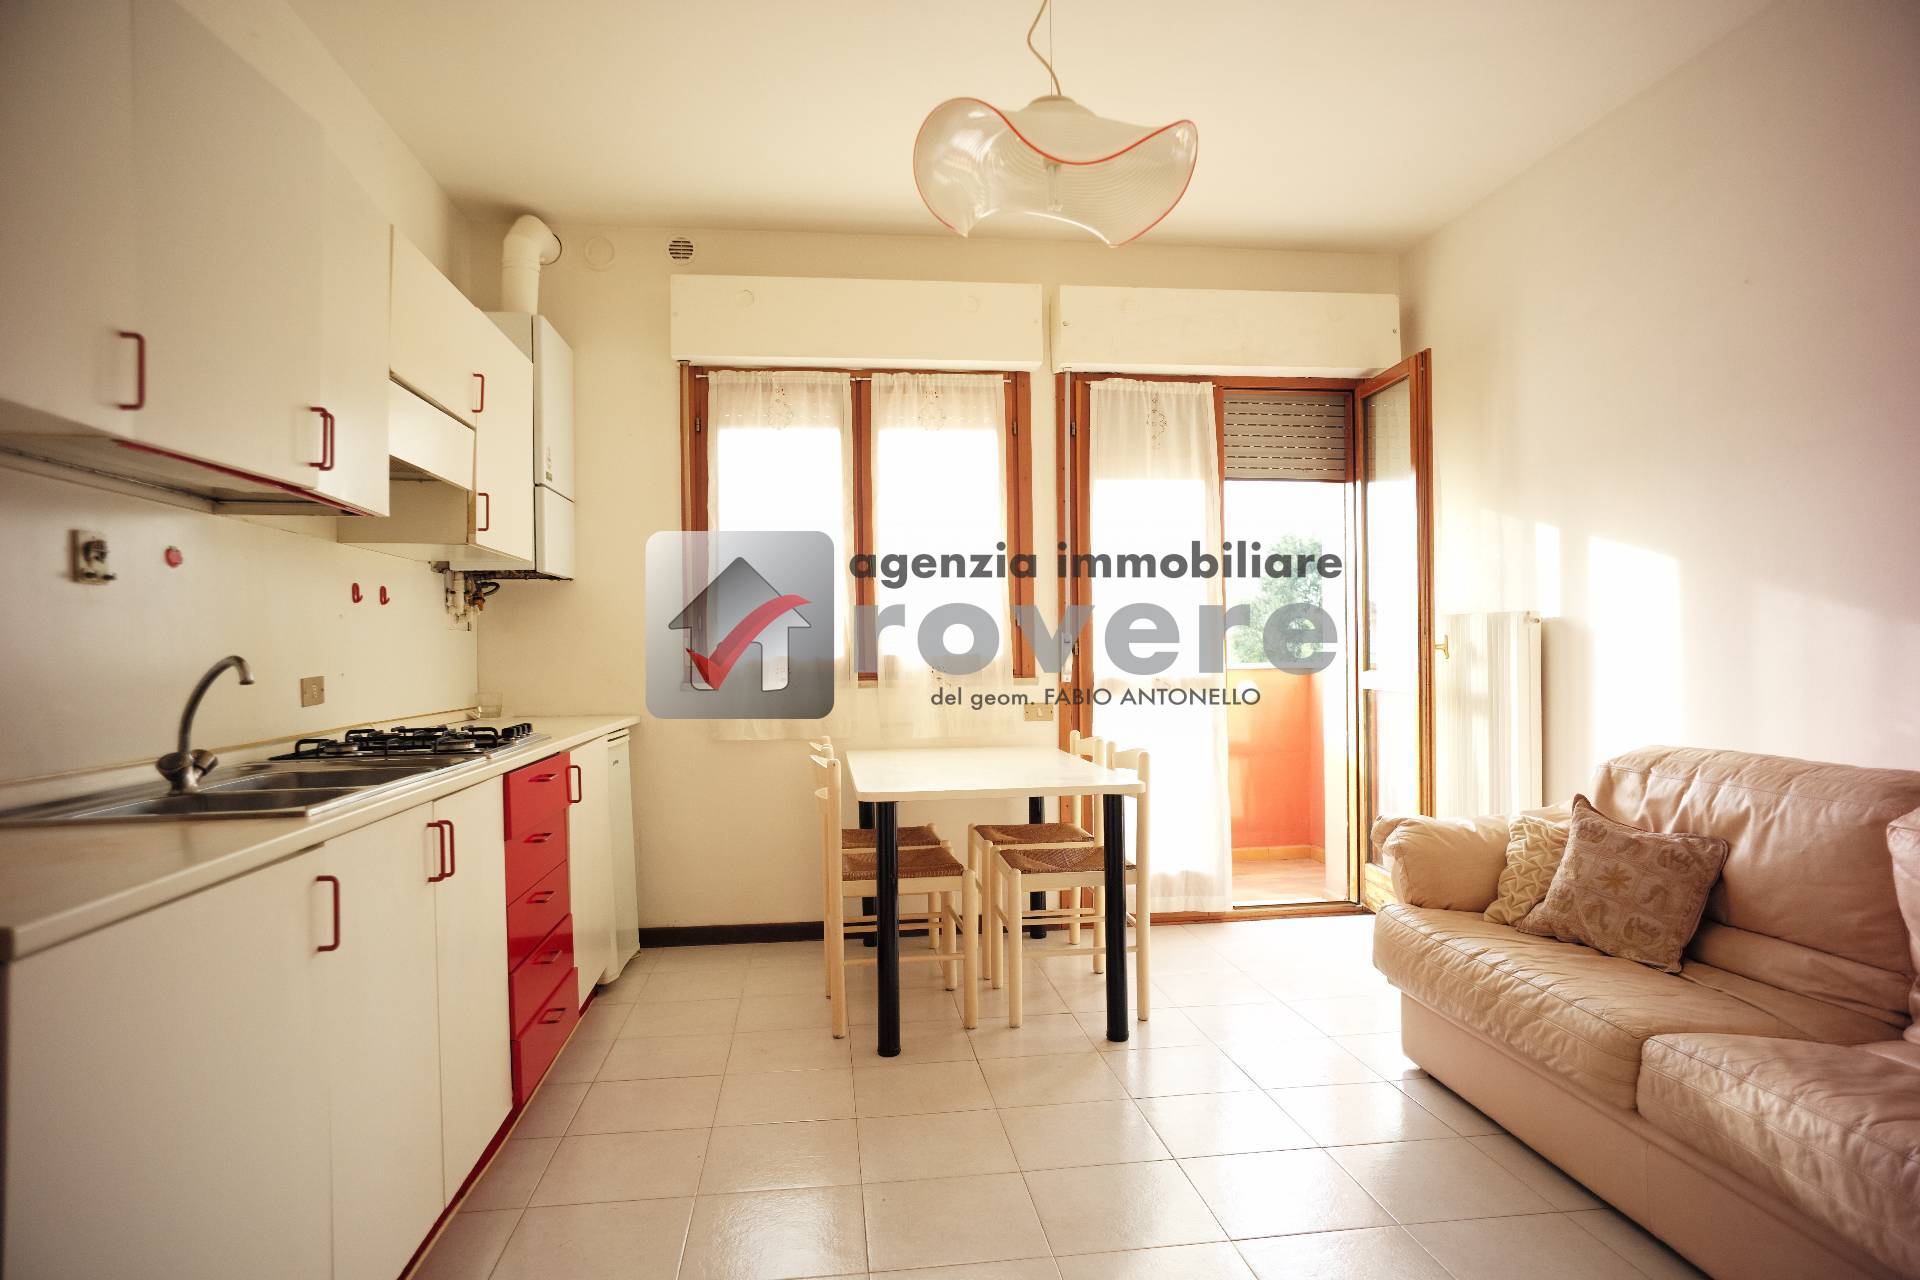 Appartamento in vendita a Villorba, 2 locali, zona Località: Carit?, prezzo € 75.000 | PortaleAgenzieImmobiliari.it